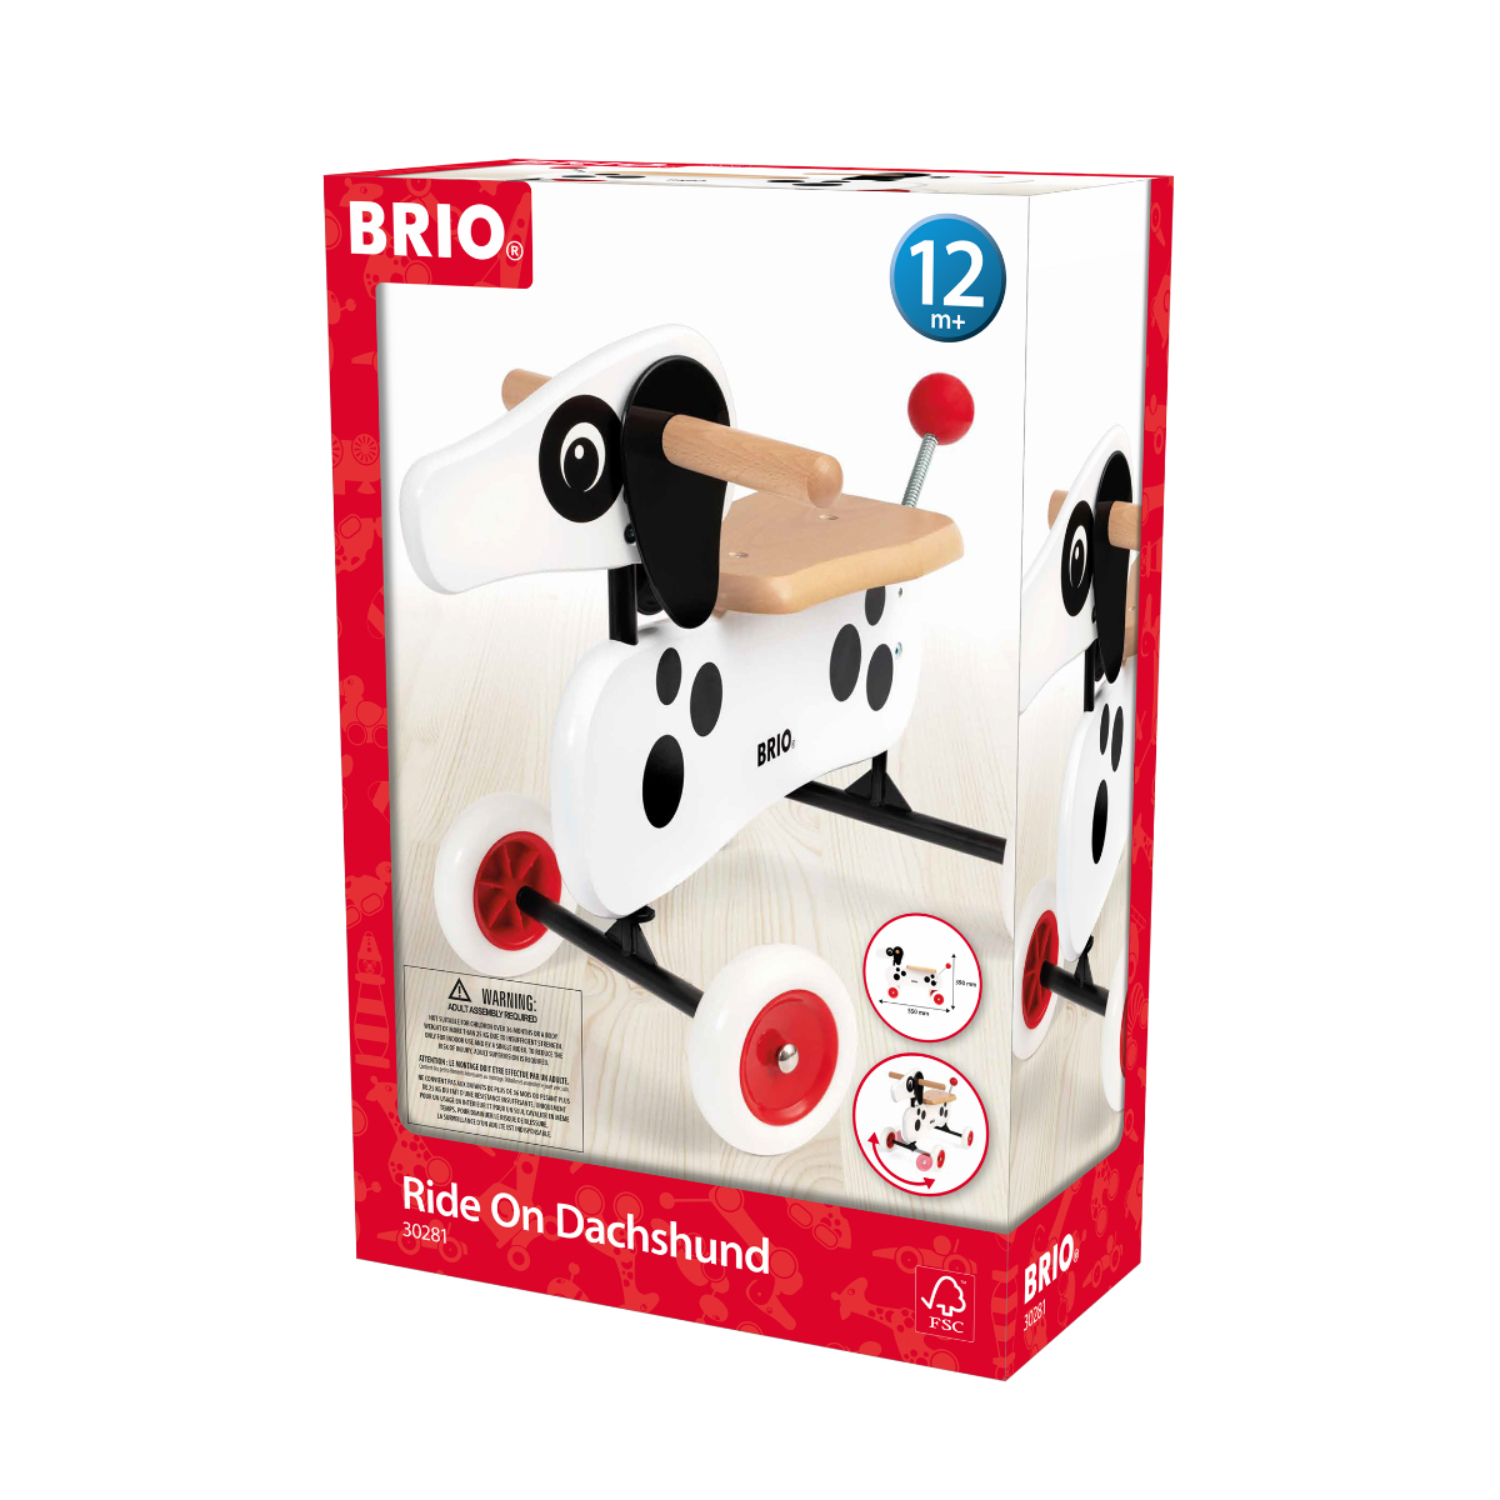 BRIO ブリオ ライドオンダッチー 白犬 対象年齢 1歳 木製 知育玩具 正規輸入品